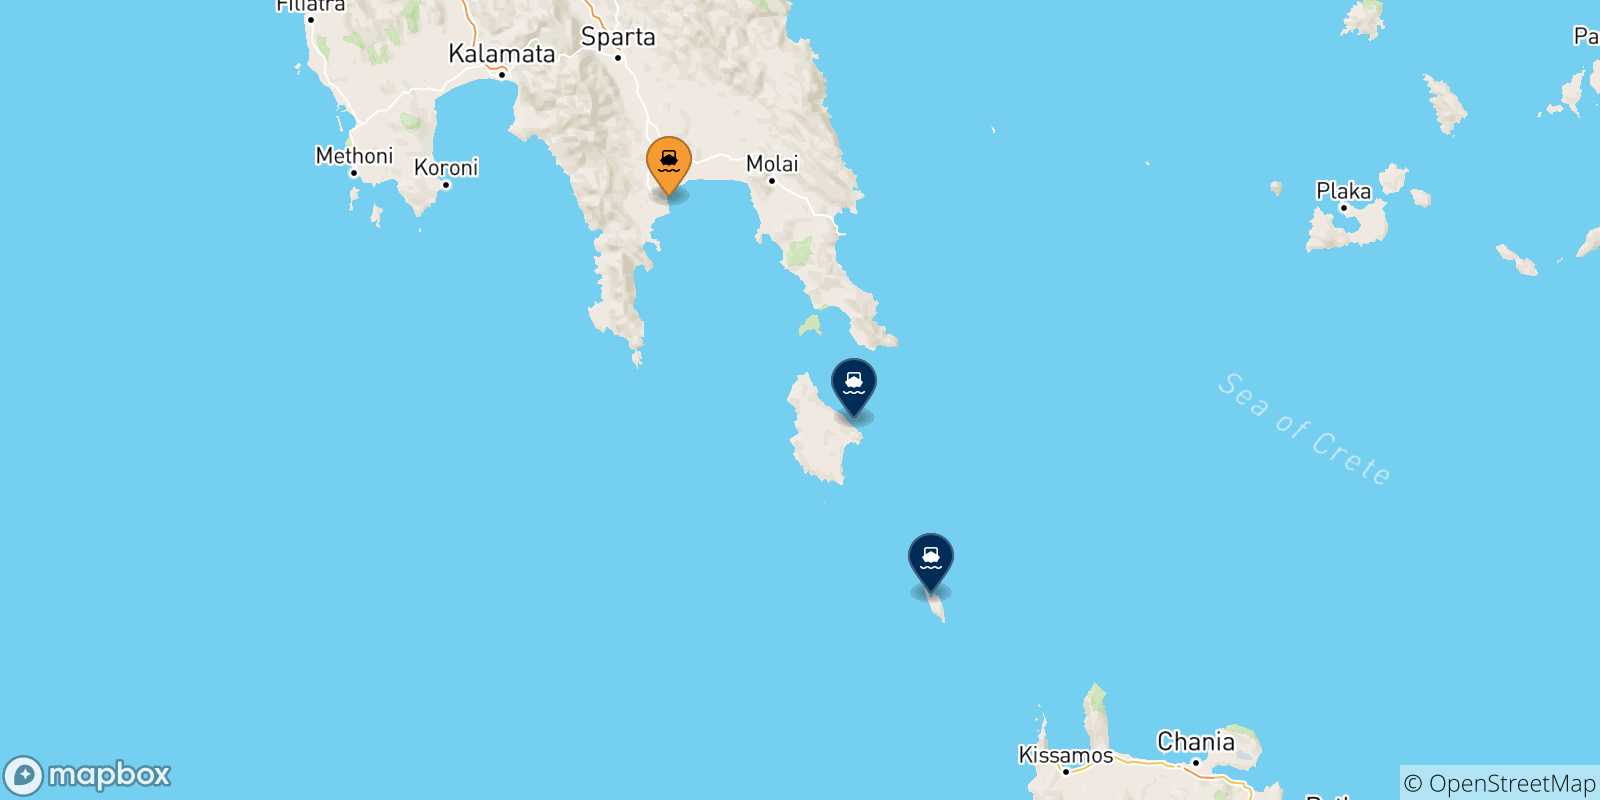 Mappa delle possibili rotte tra Gythio e le Isole Ionie